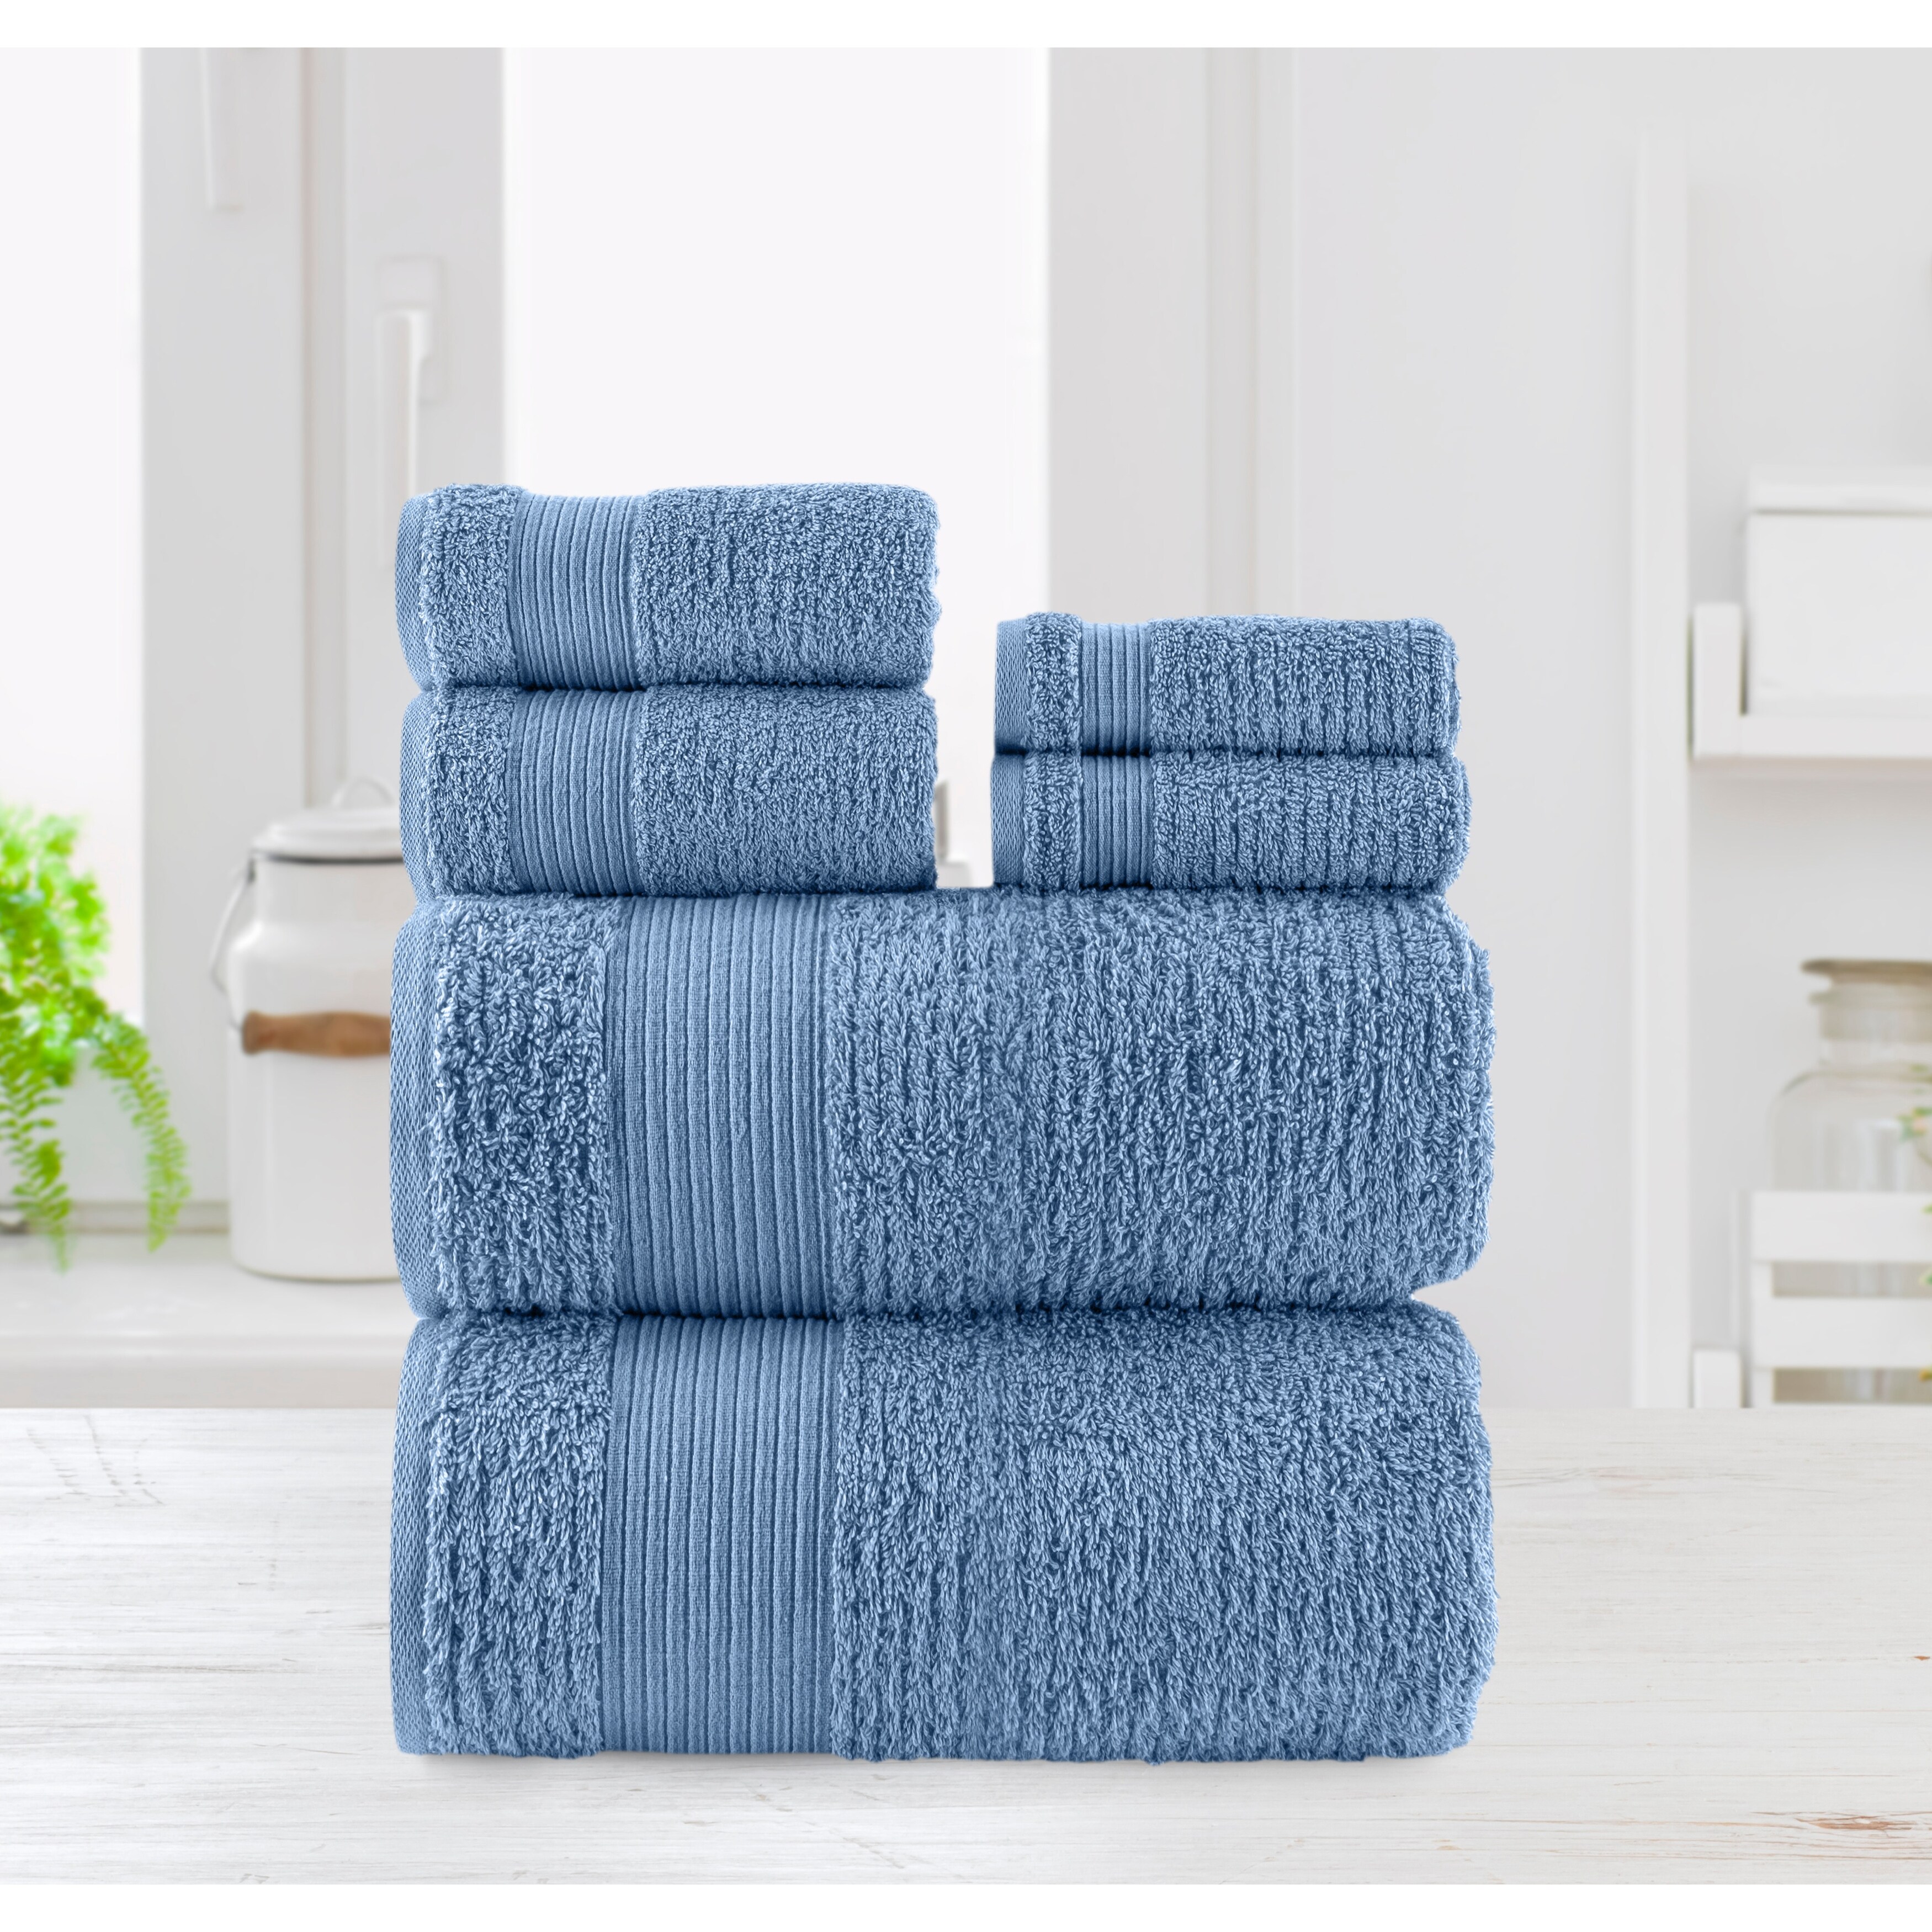 Chic Home 6-Piece Standard 100 Oeko-Tex Certified Towel Set - N/A - Bed  Bath & Beyond - 38354043